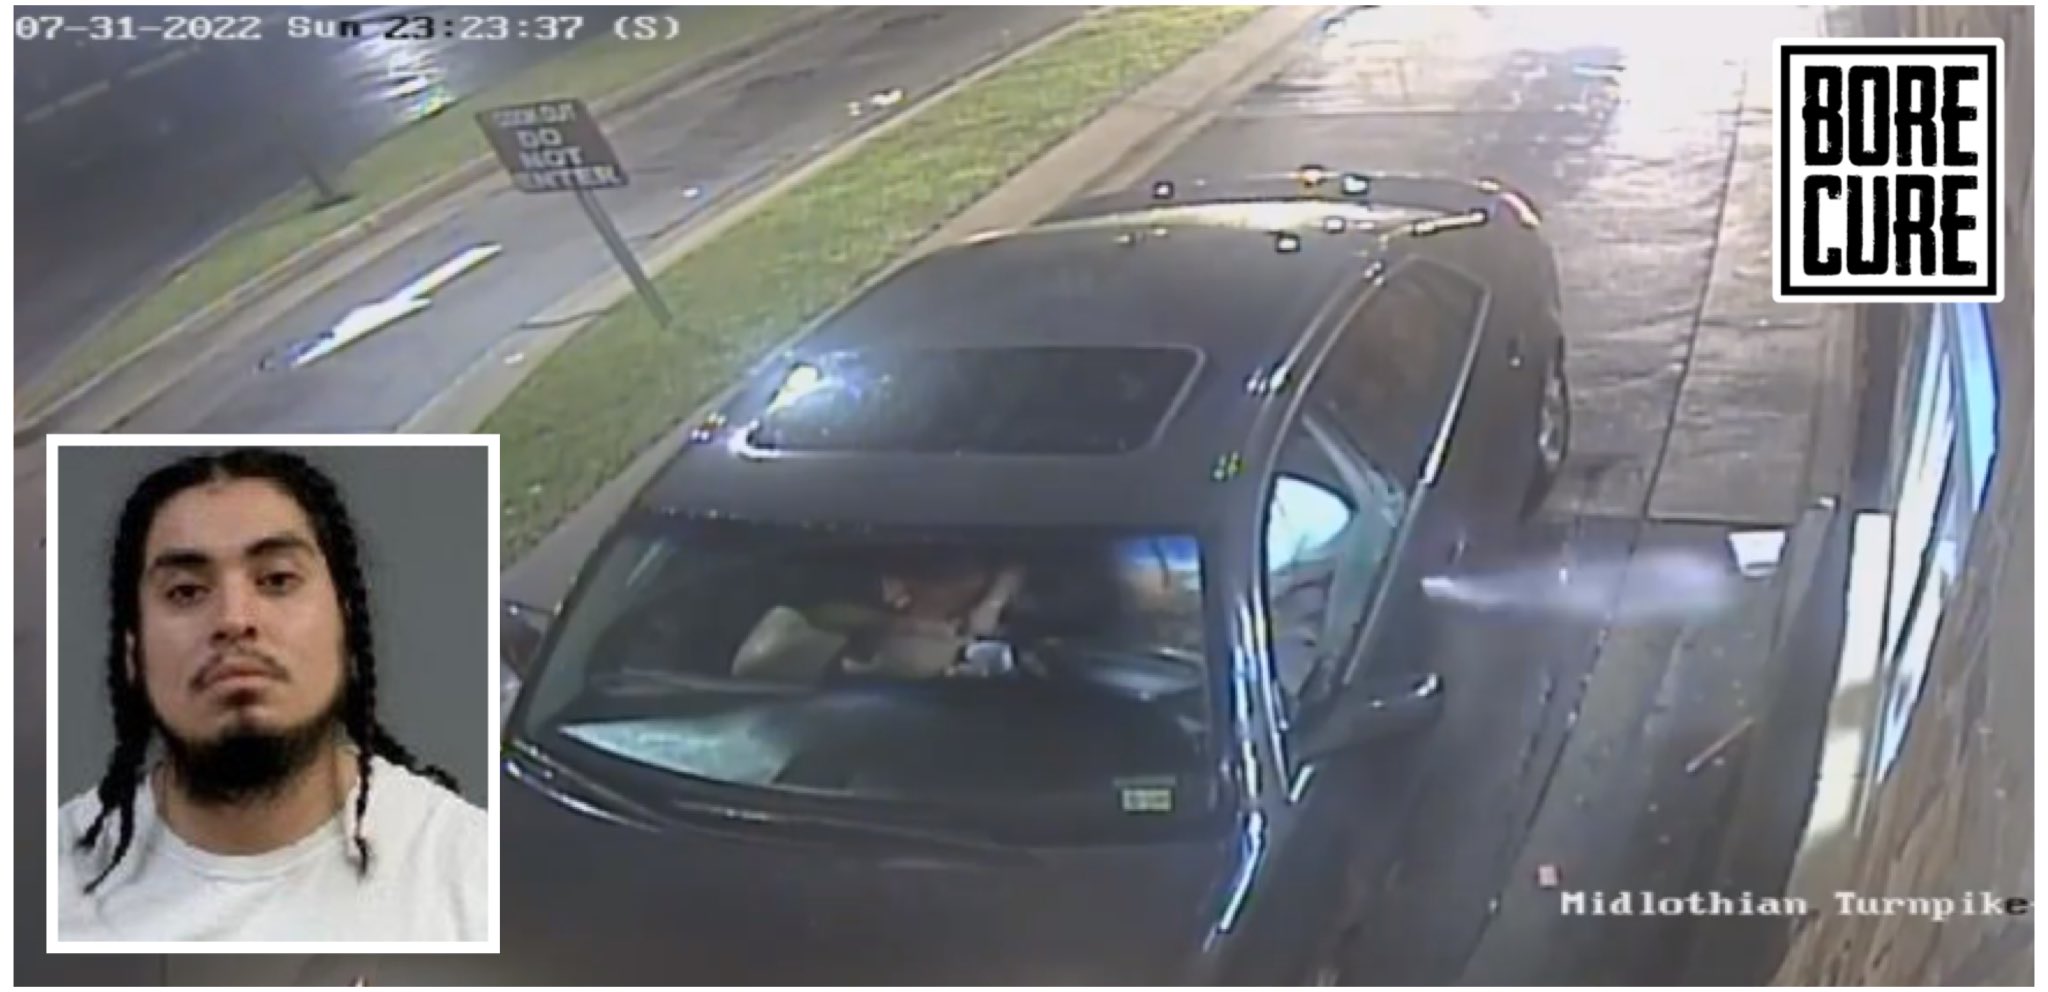 Βίντεο: Οδηγός σταματάει μαζί με την οικογένειά του για να πάρει φαγητό και πυροβολεί τον υπάλληλο!